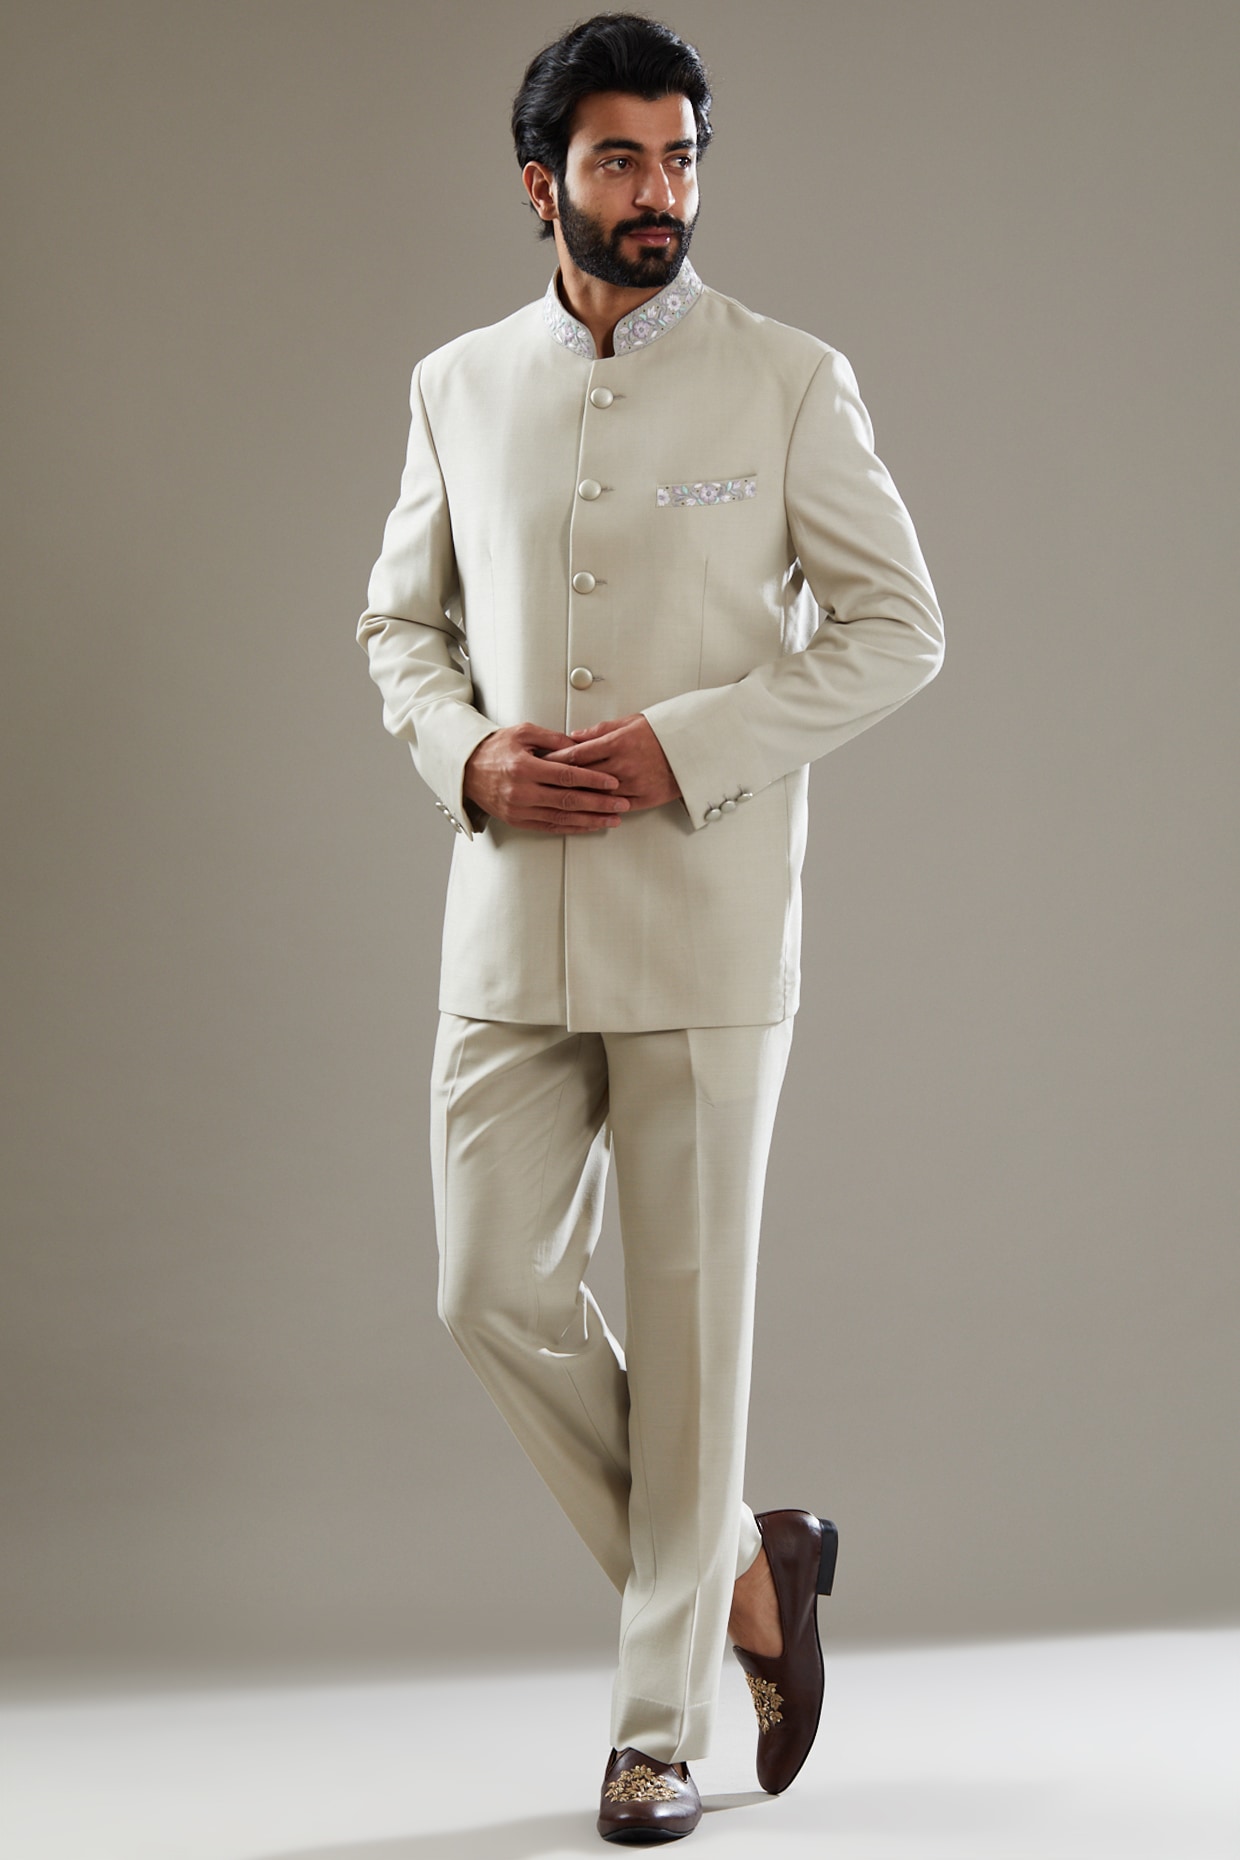 Men's Coat Suit 2020 | Buy Suits and Blazers for Men Online | G3+ Fashion |  Black suit men, Indian men fashion, Fashion suits for men